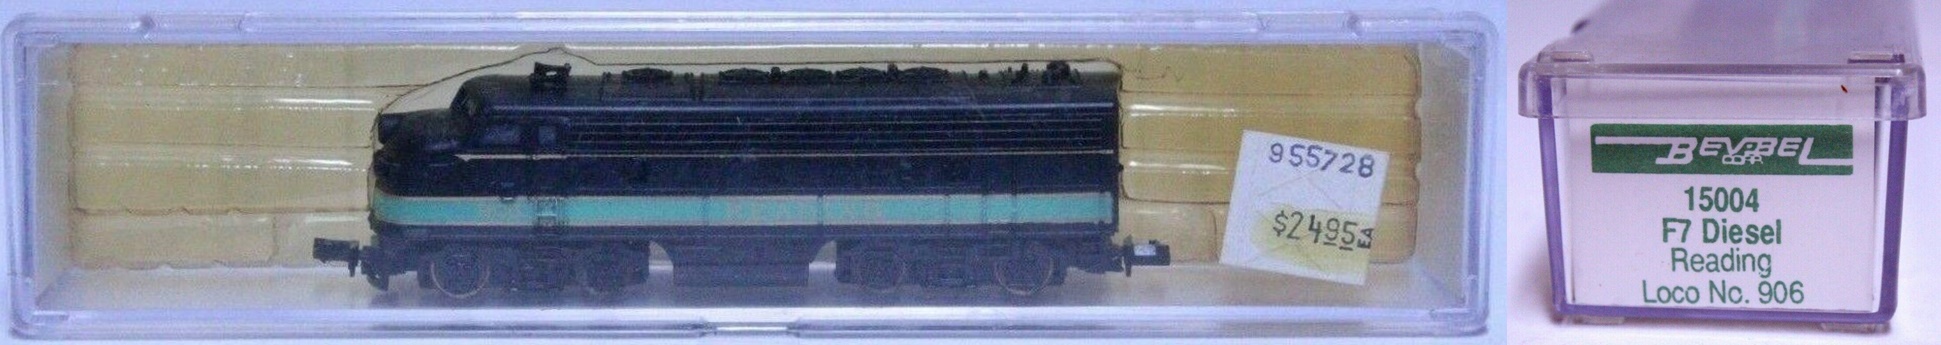 N Scale - Bev-Bel - 15004 - Locomotive, Diesel, EMD F7 - Reading - 906